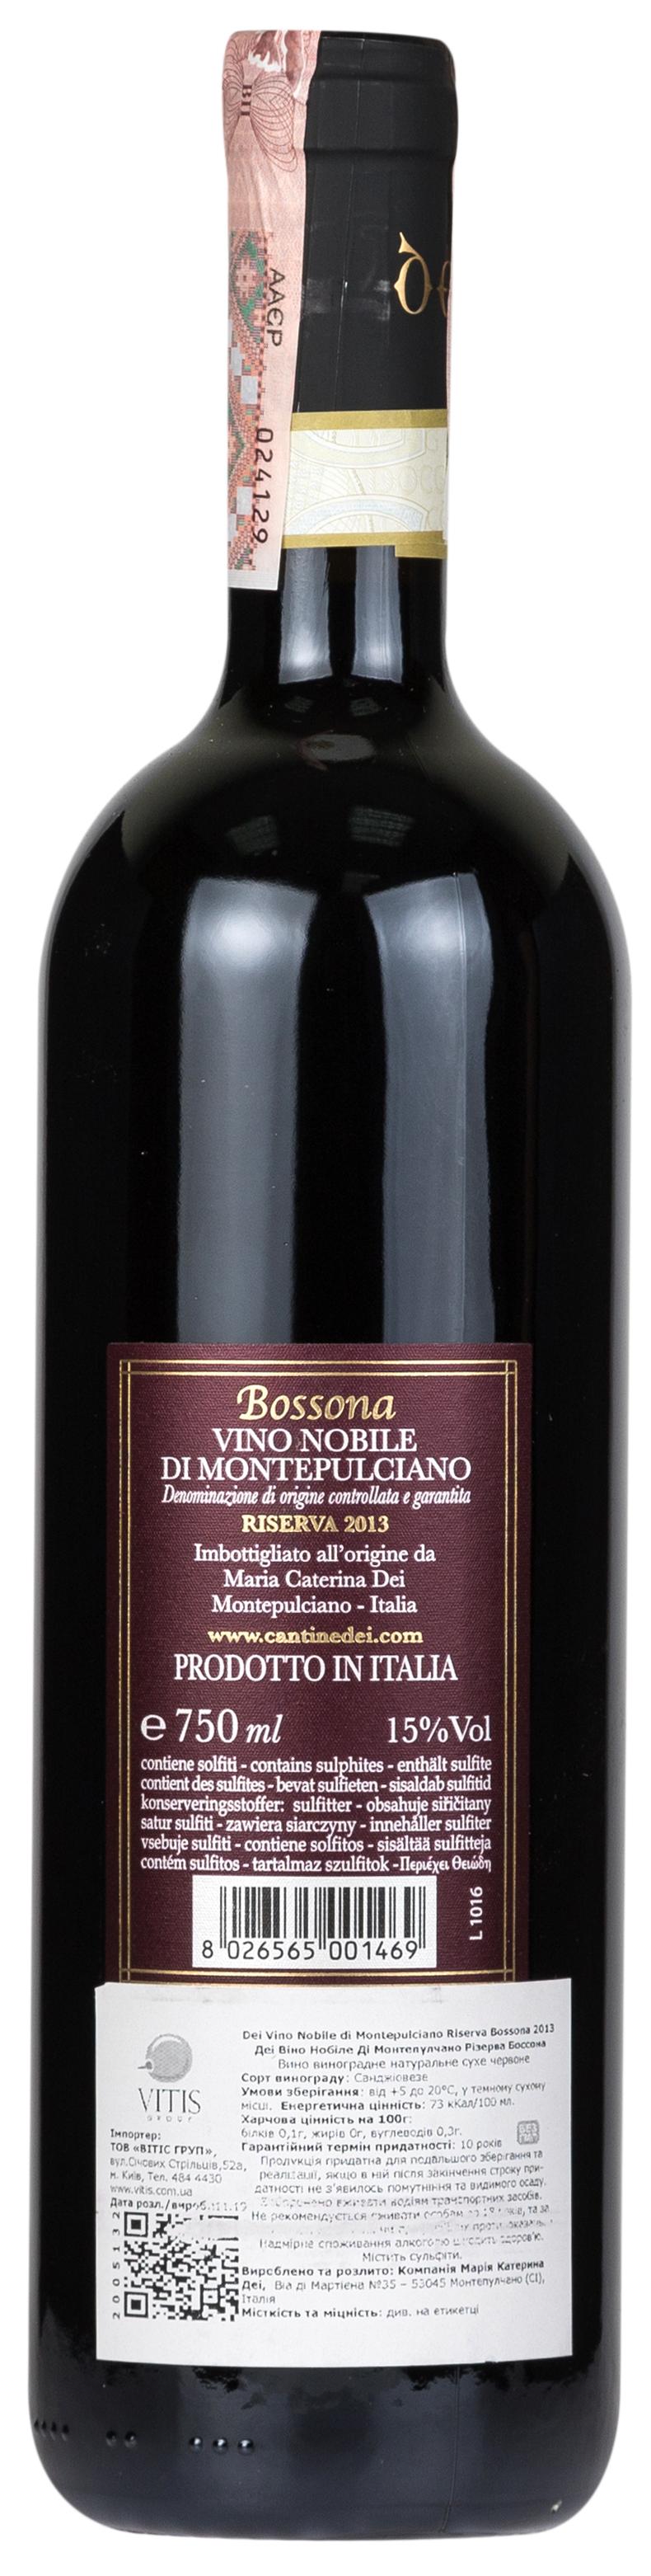 Dei Vino Nobile di Montepulciano Riserva Bossona 2013 - 2